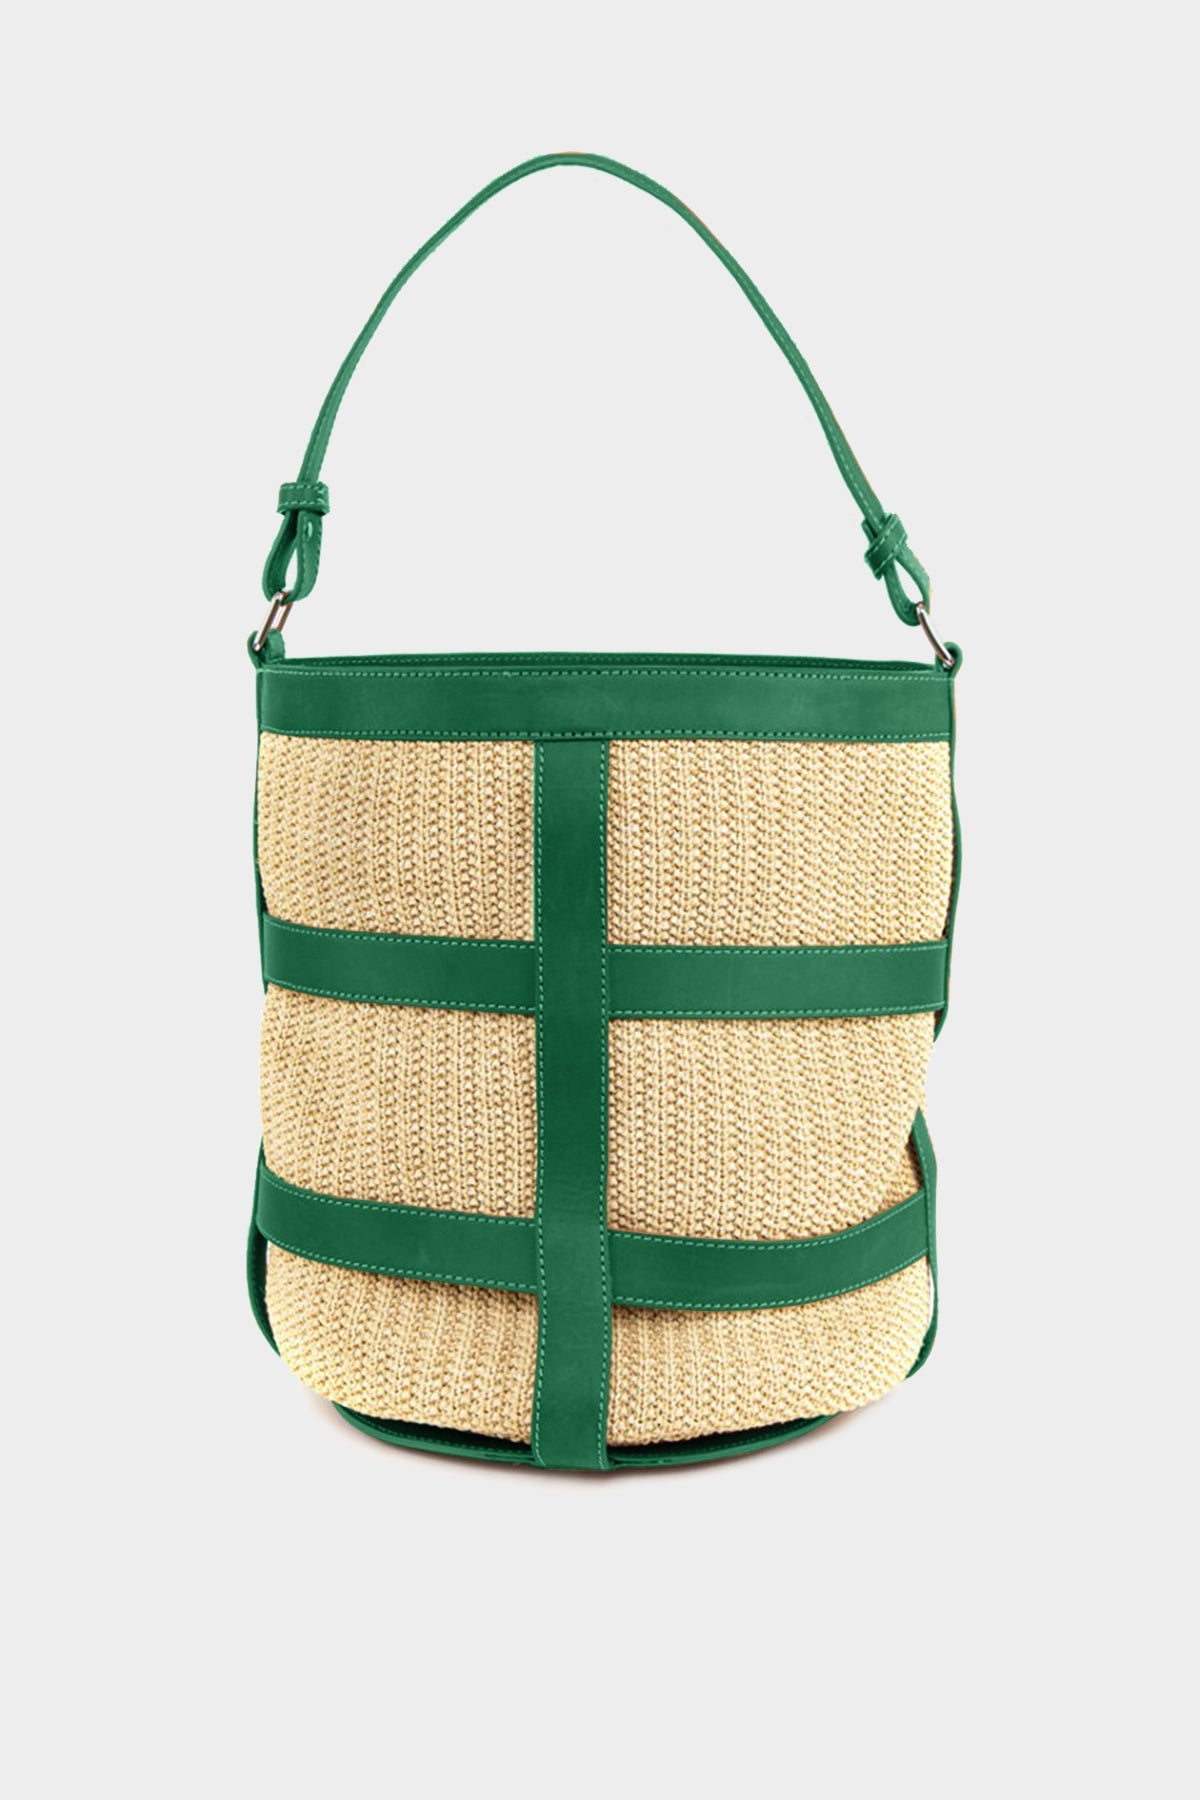 Gea Big Raffia Bucket Bag in Emerald Green - shop-olivia.com